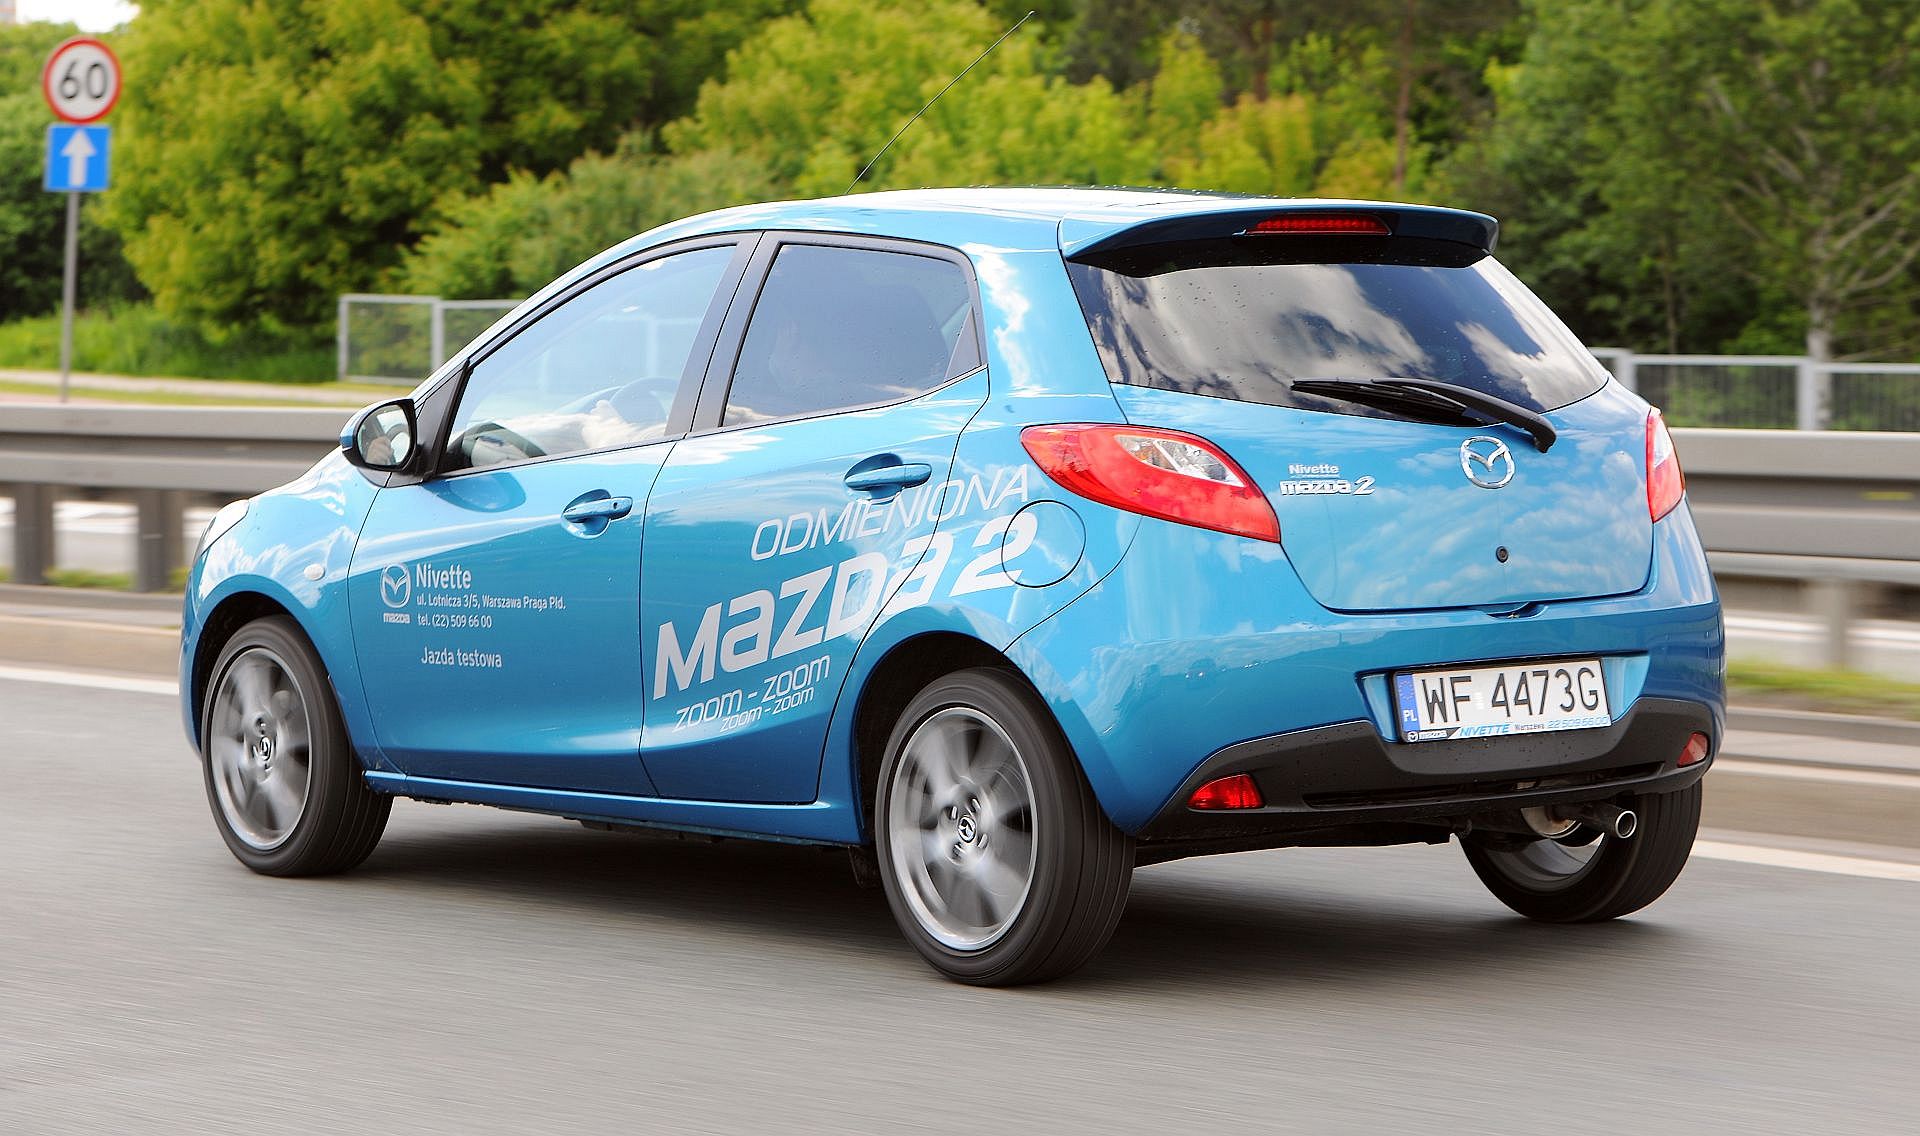 Używana Mazda 2 Ii (2007-2014) - Opinie, Dane Techniczne, Typowe Usterki